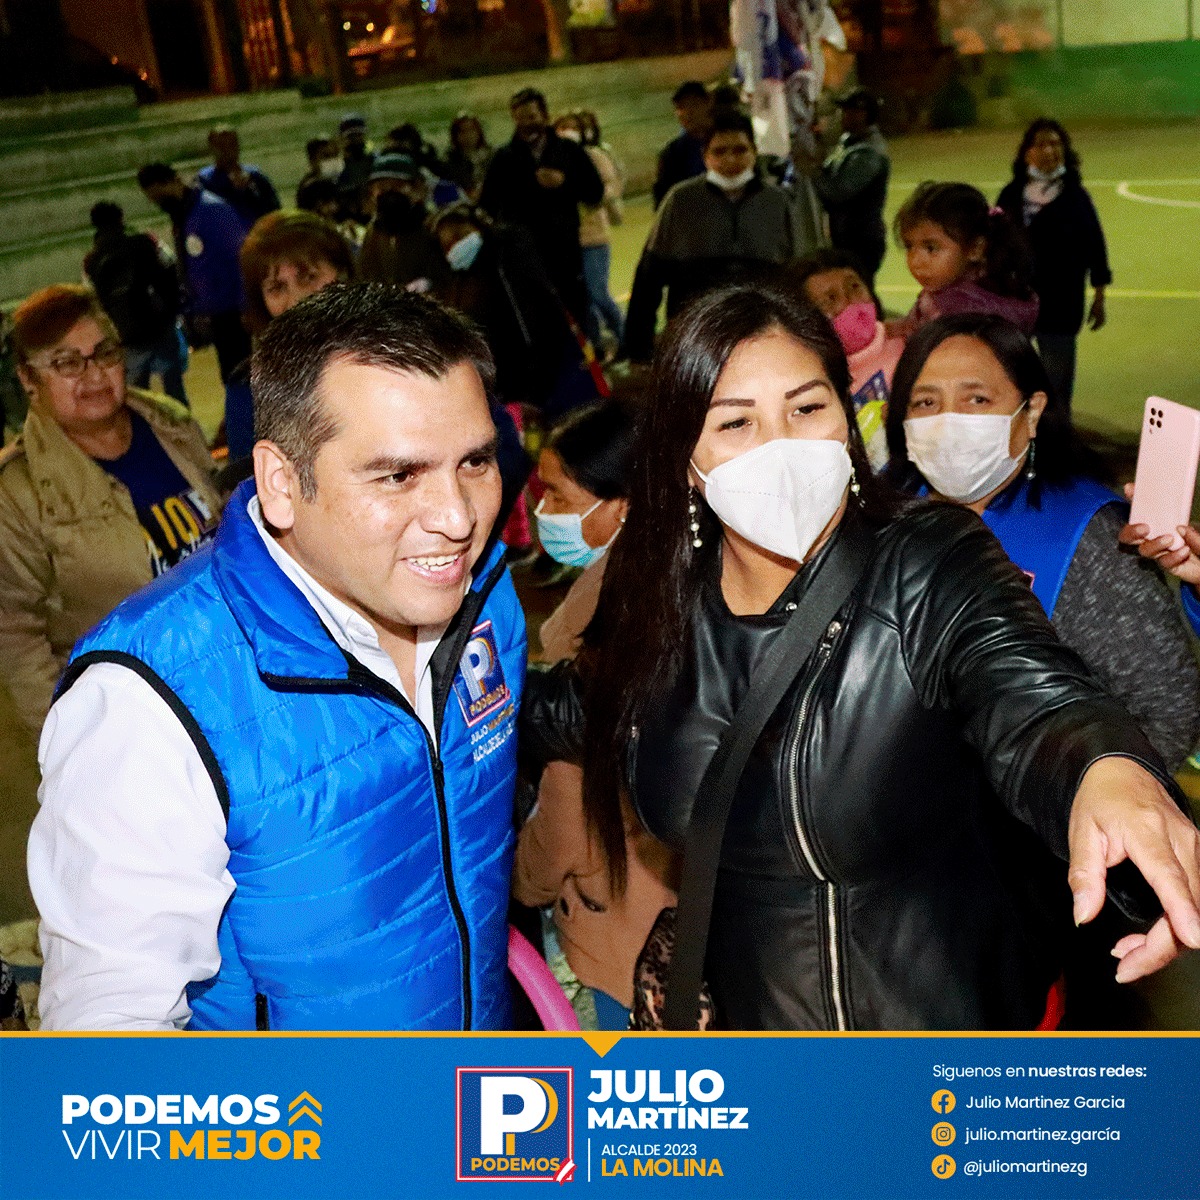 Contendores tildan de ineficiente a candidato en La Molina, Julio Martínez